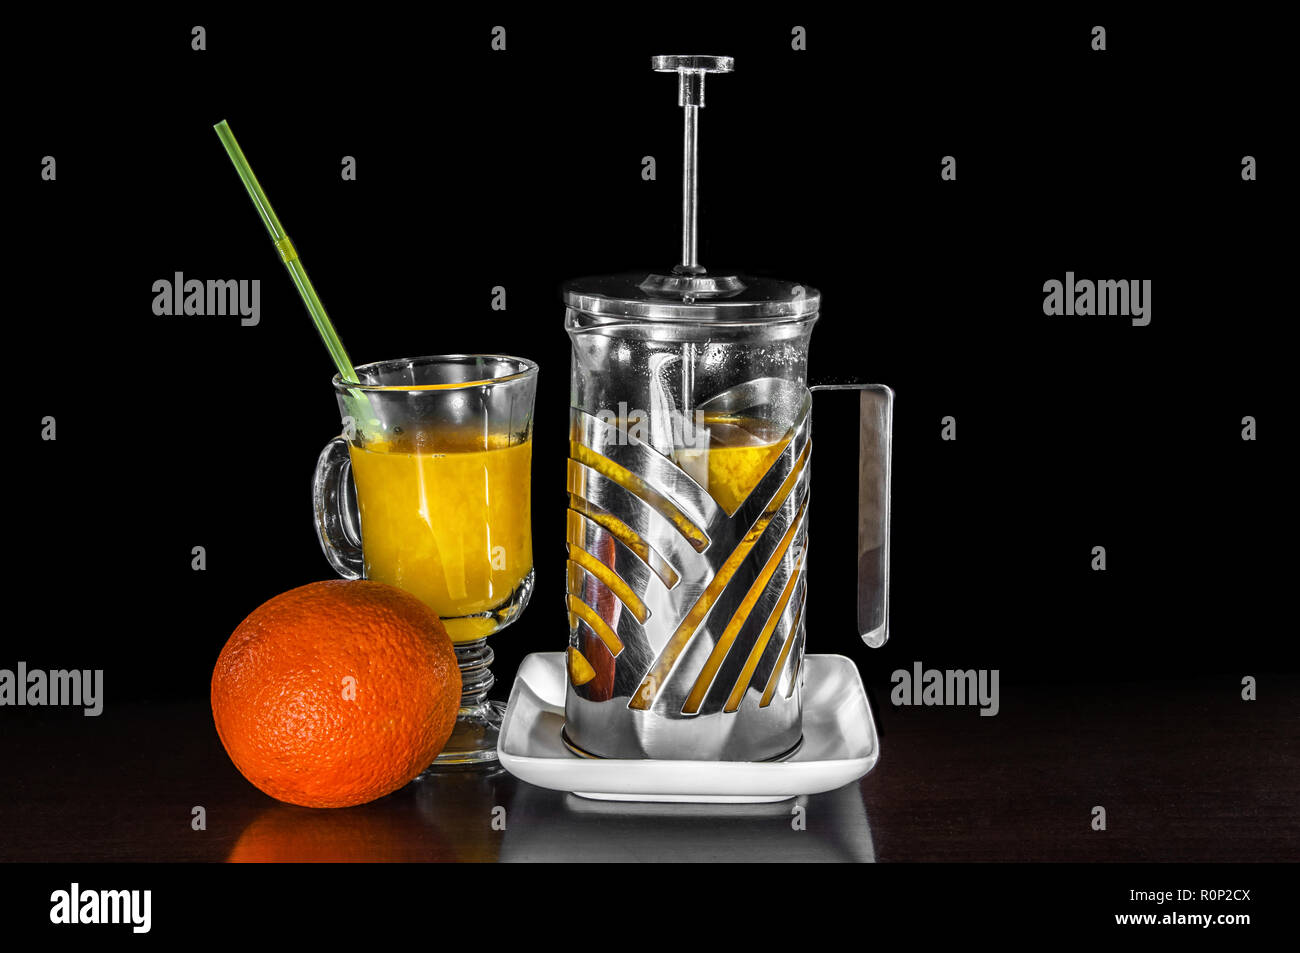 Le jus d'Orange sur la table close-up avec orange et blanc de l'acier électrique Banque D'Images